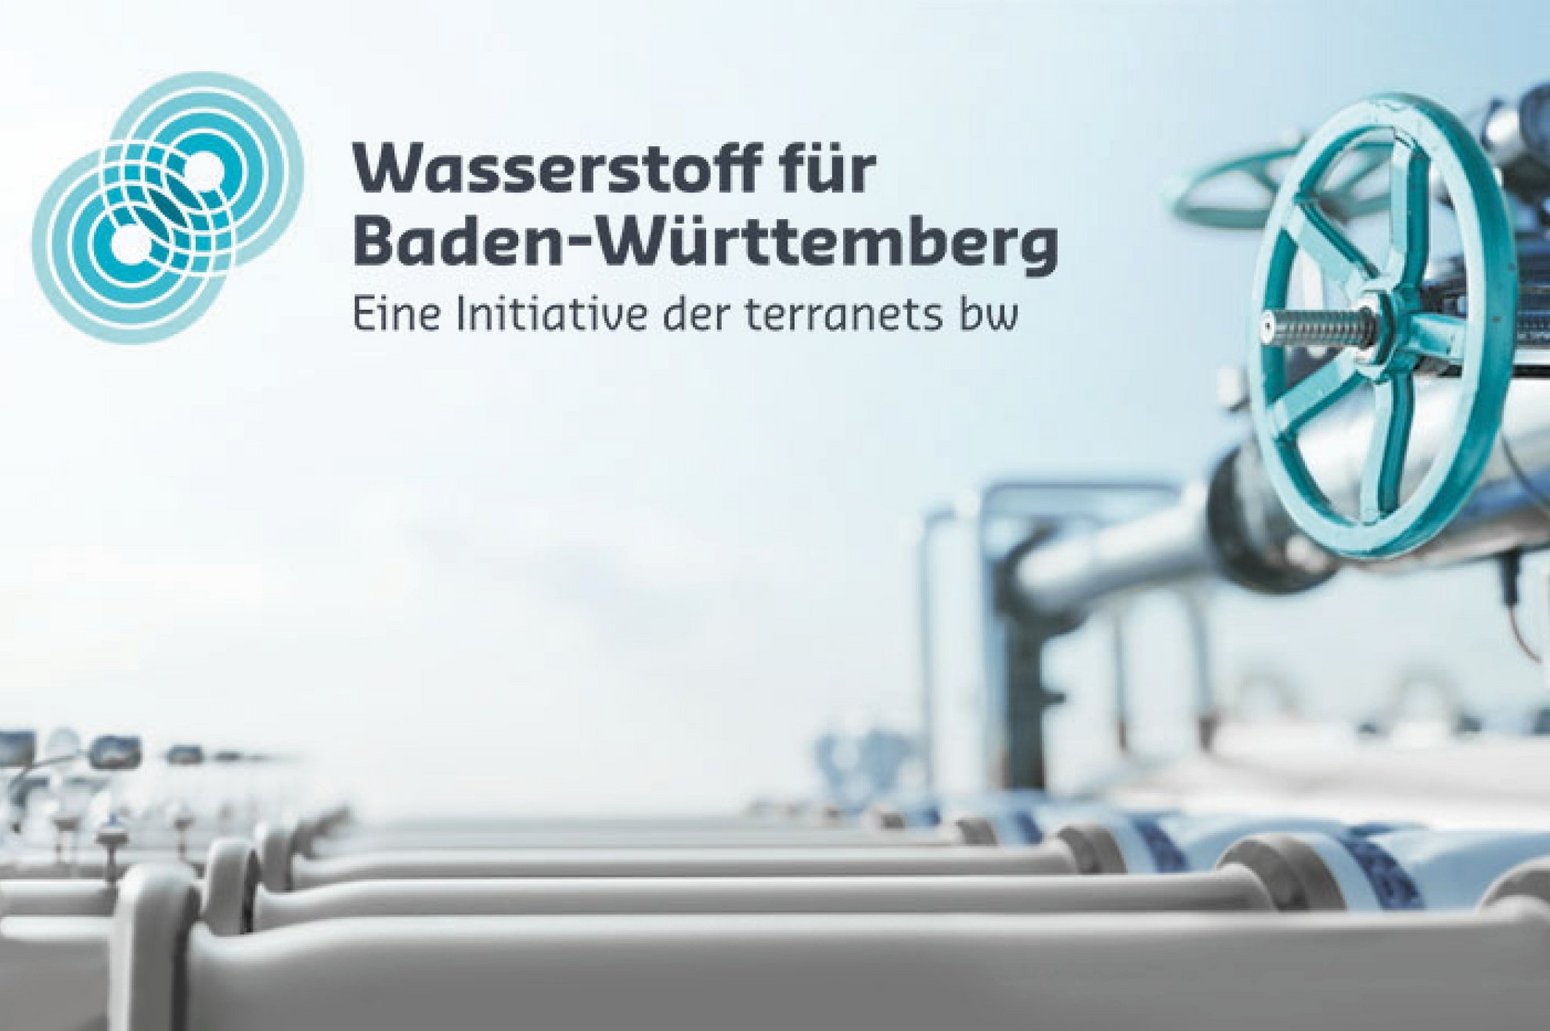 terranets bw: Wasserstoff für Baden-Württemberg